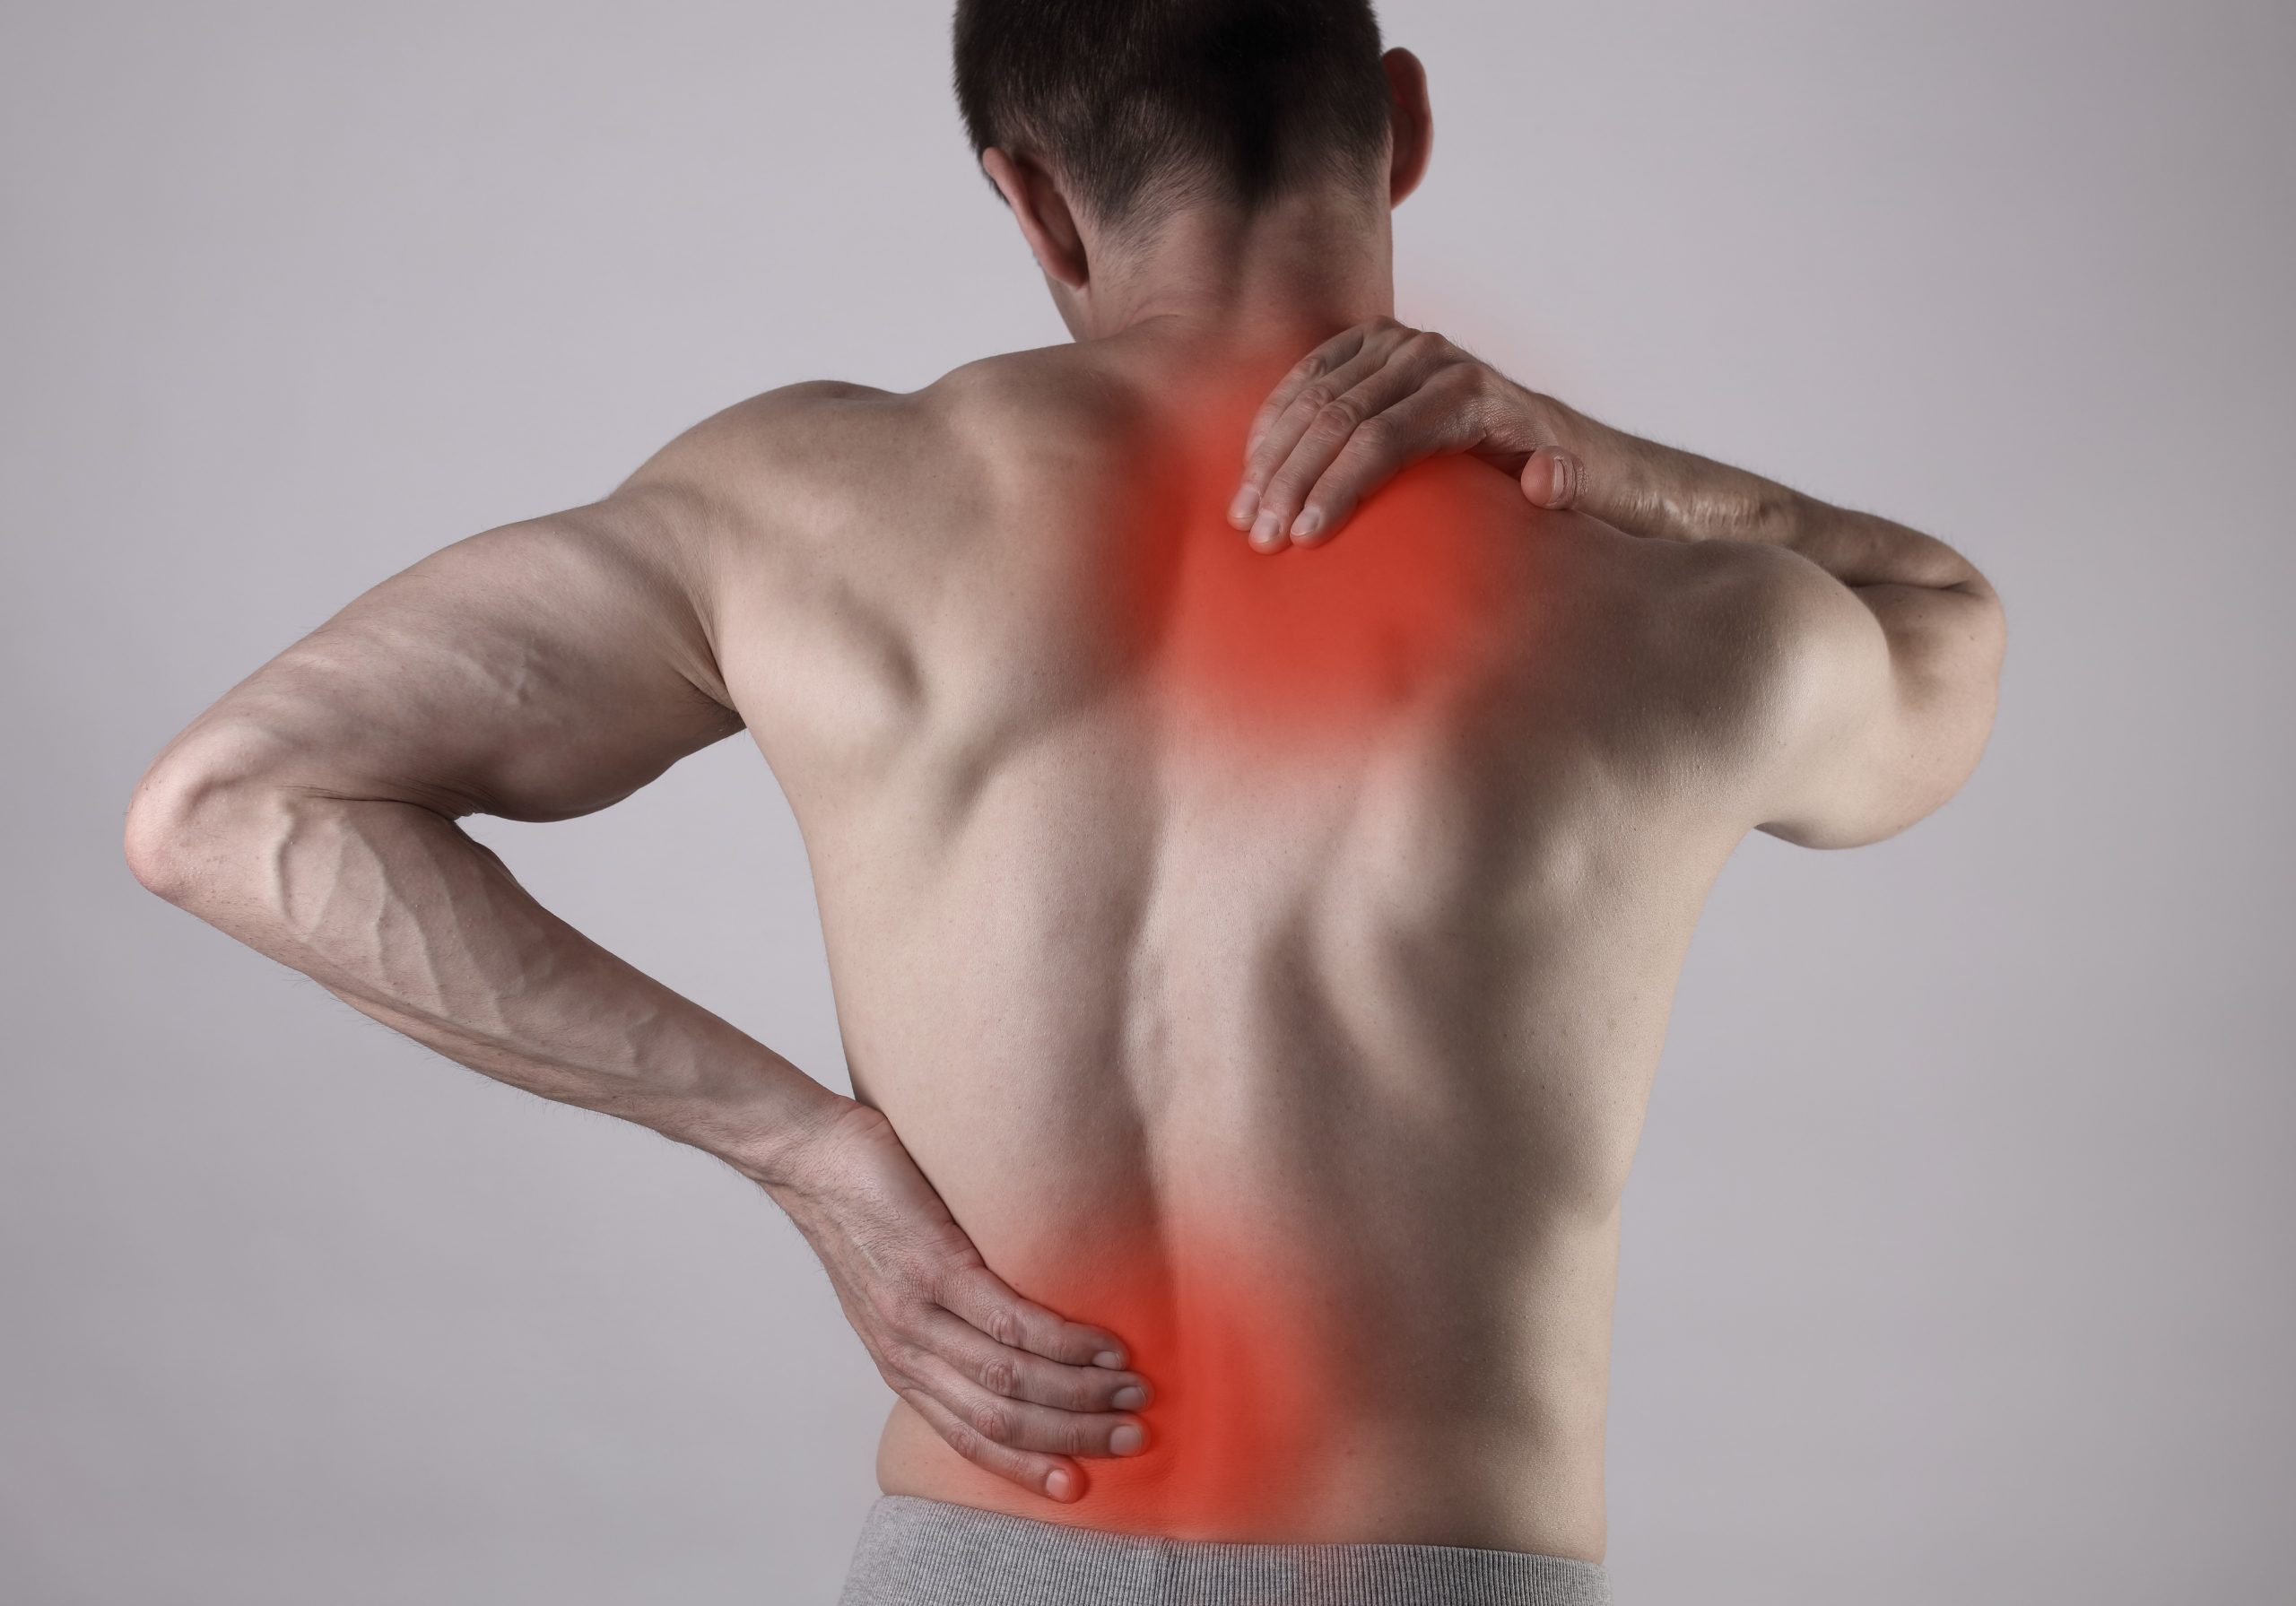 Comment faire passer une douleur dans la poitrine?